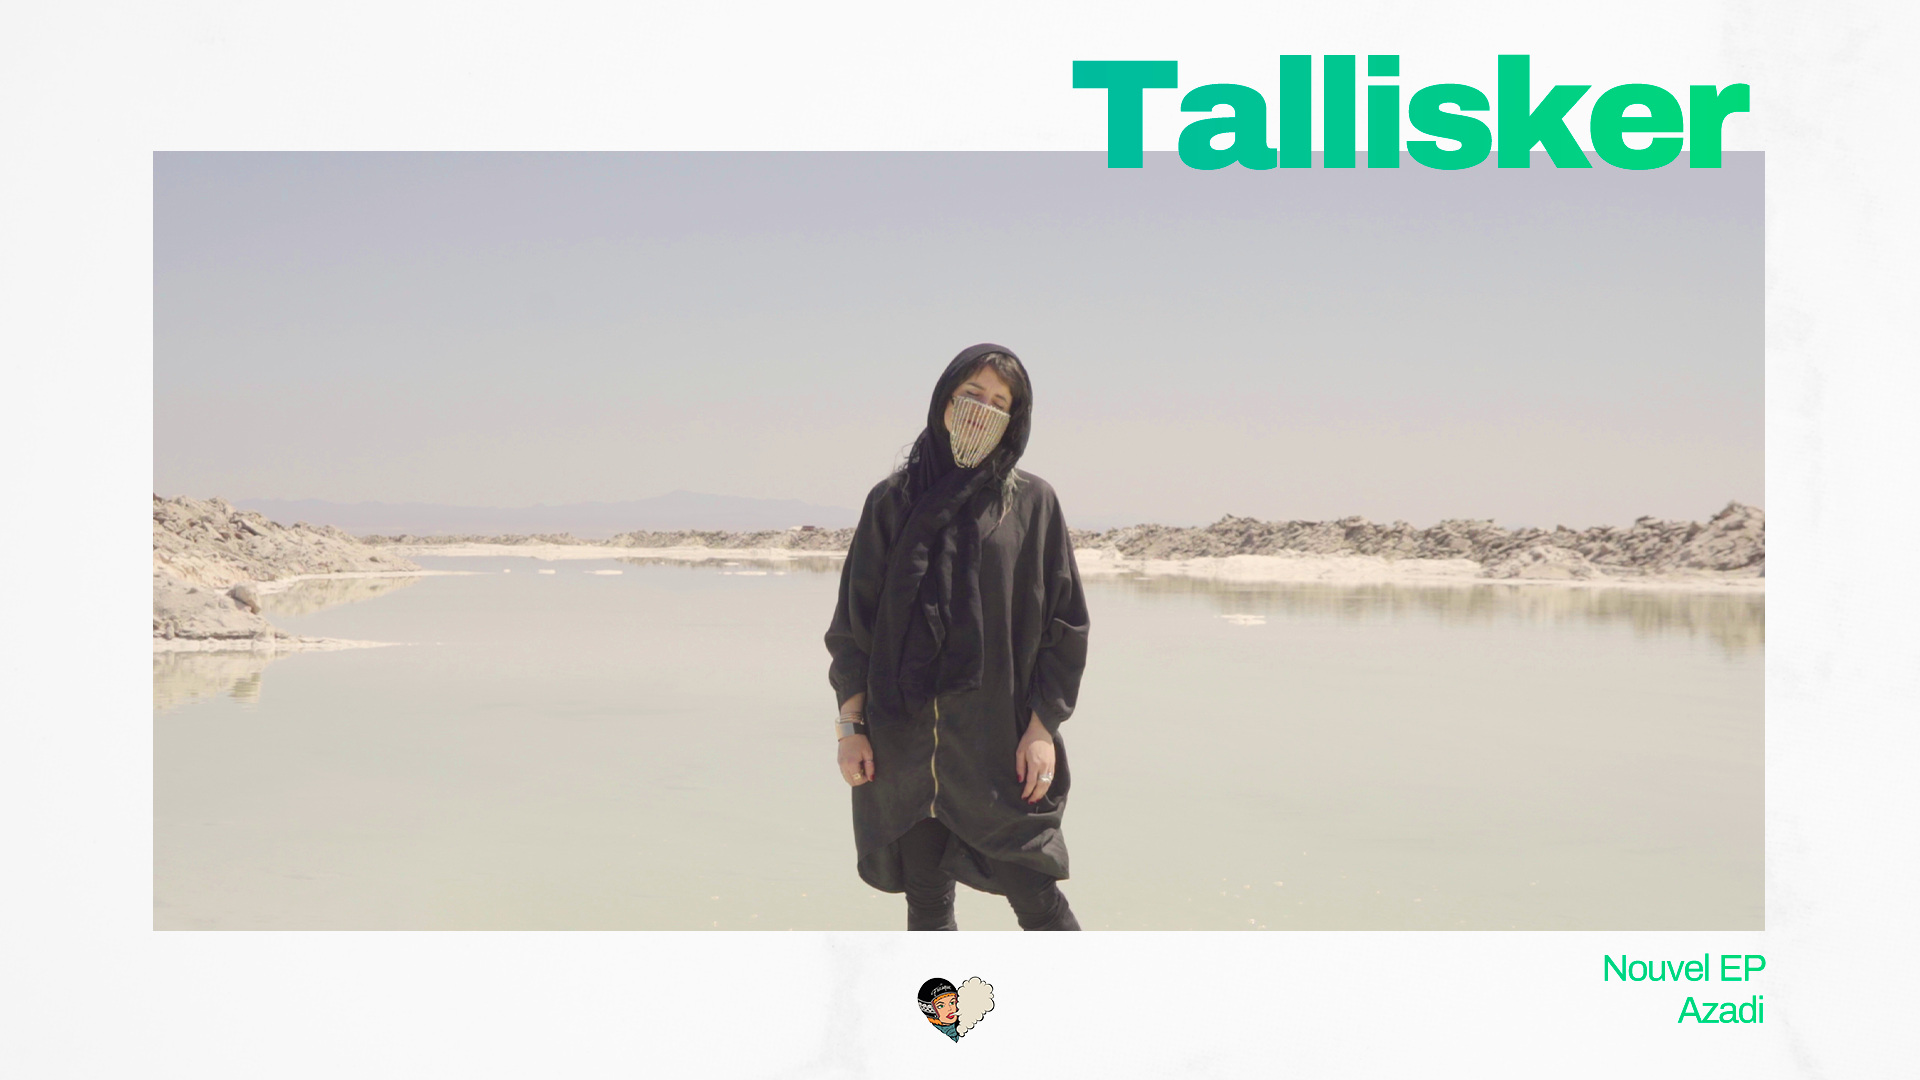 Tallisker sort un nouvel EP 